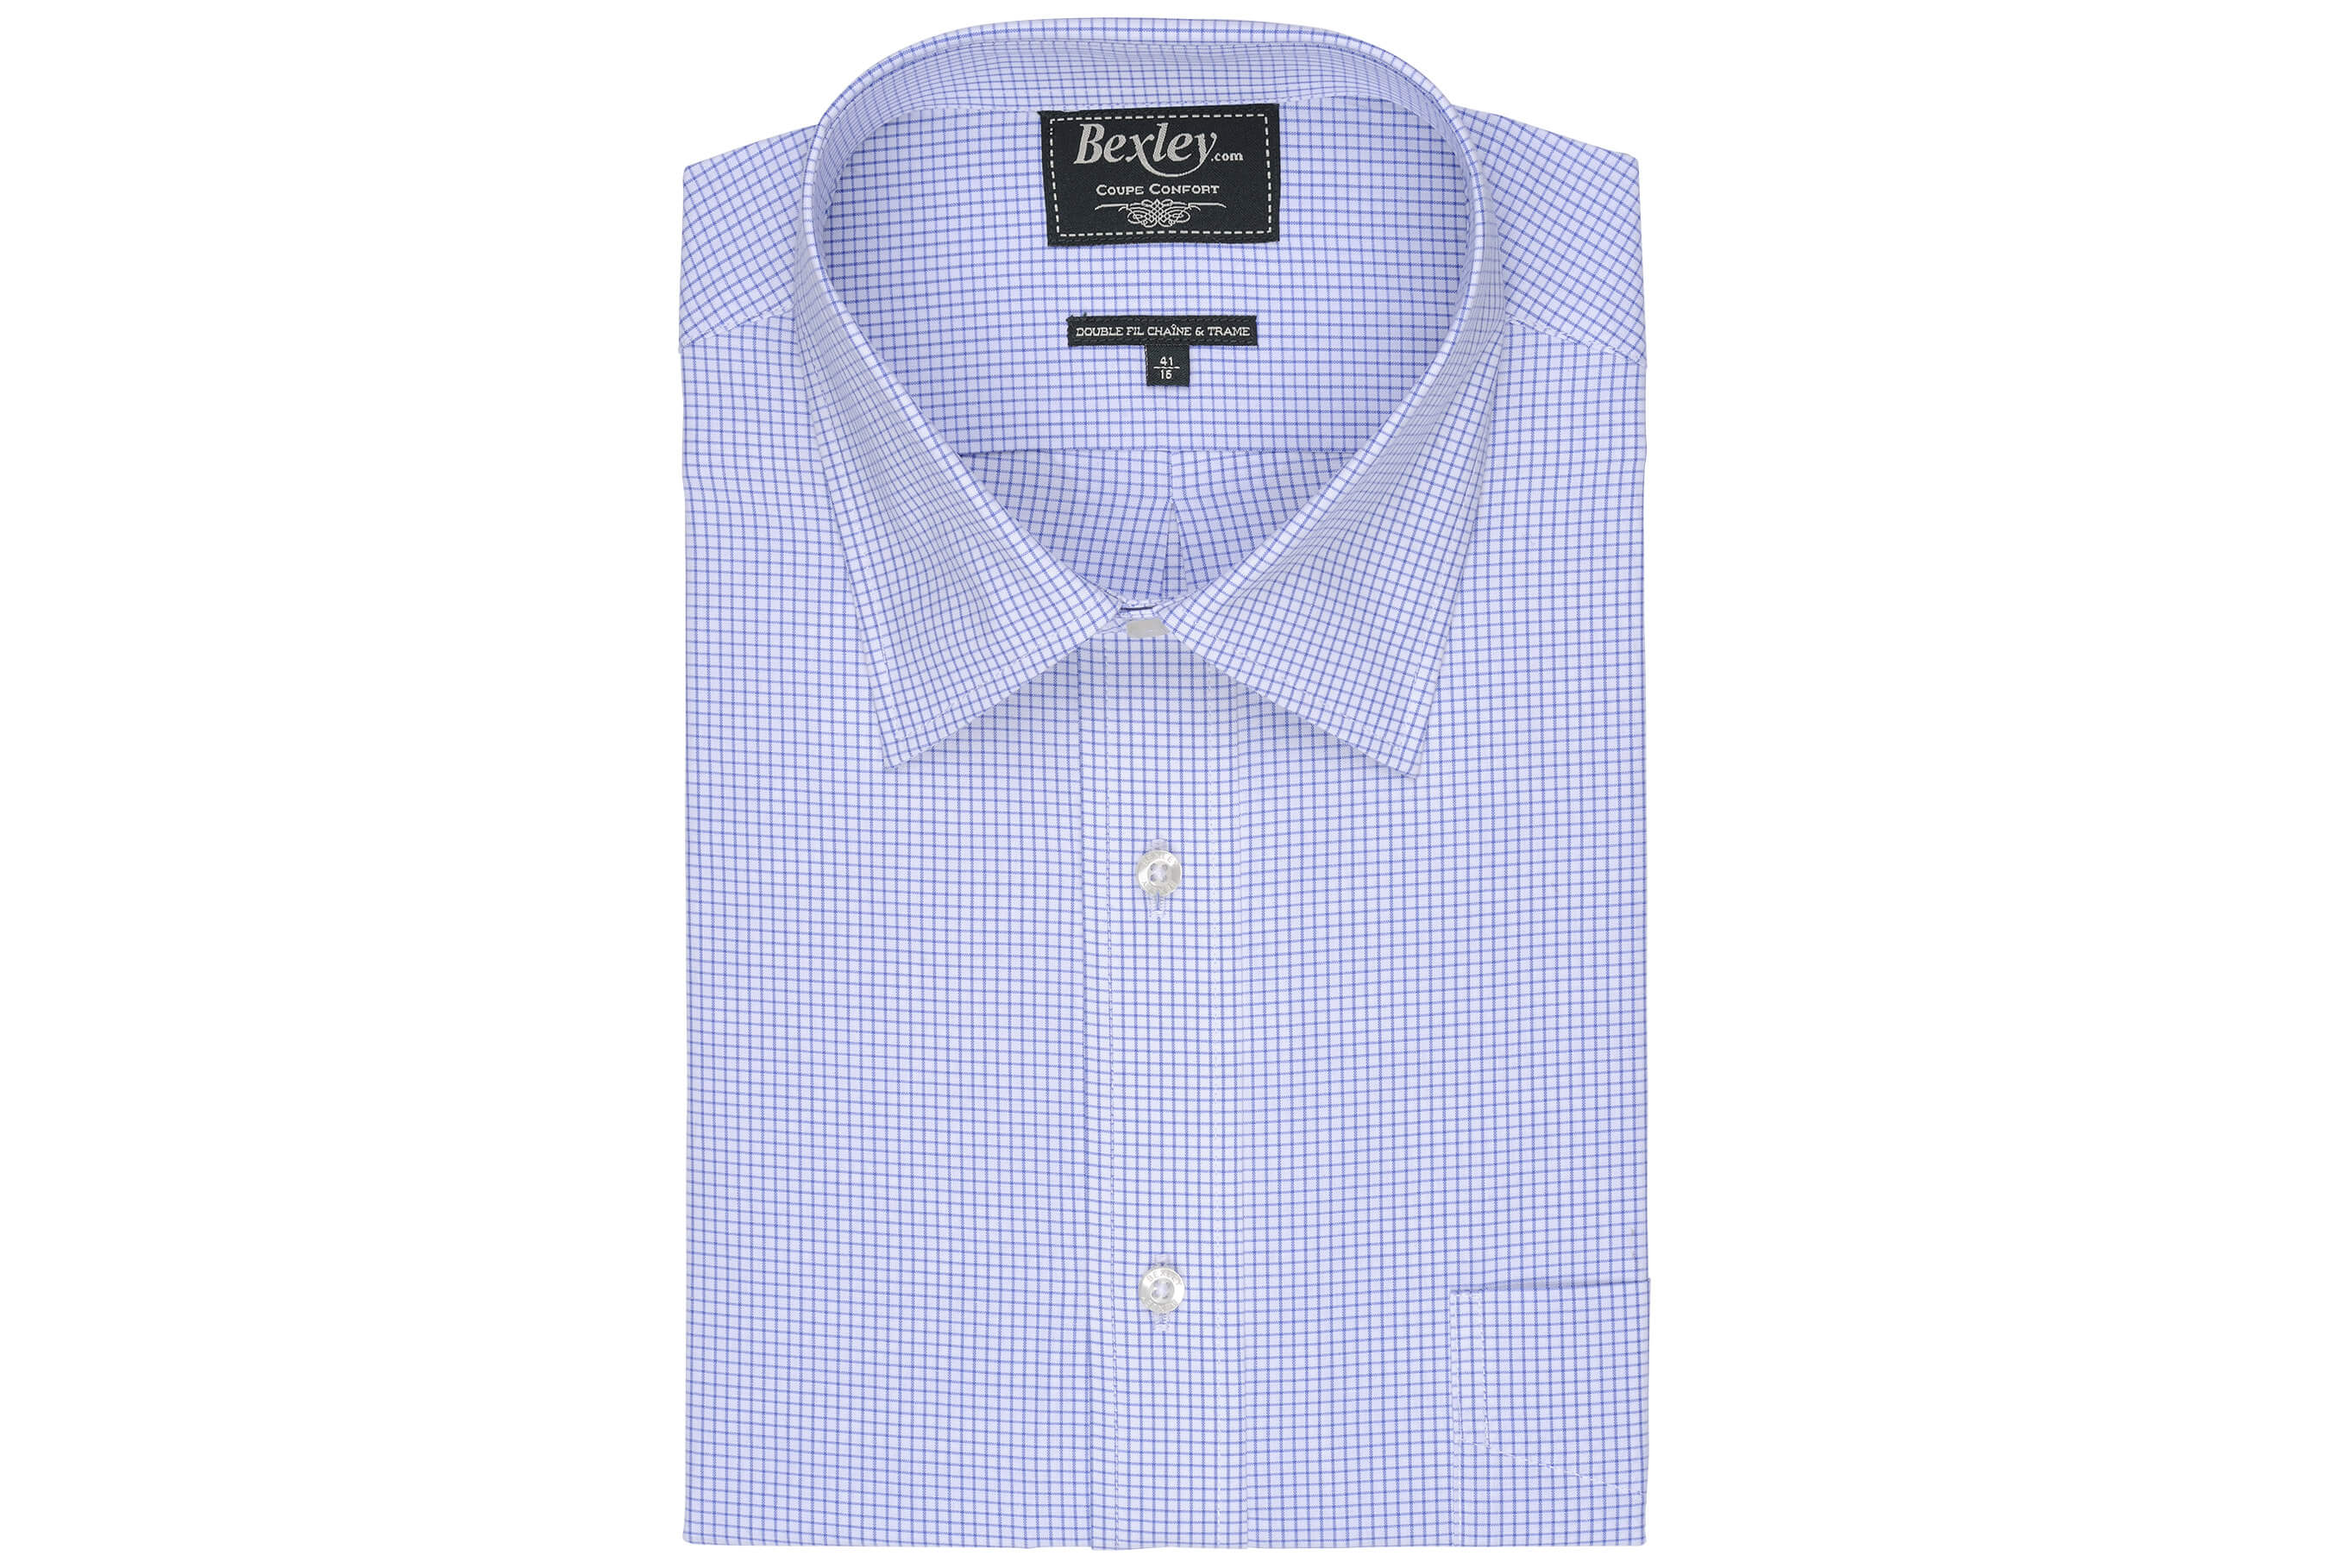 bexley chemise homme 100% coton, bleu ocean et blanc, manches longues